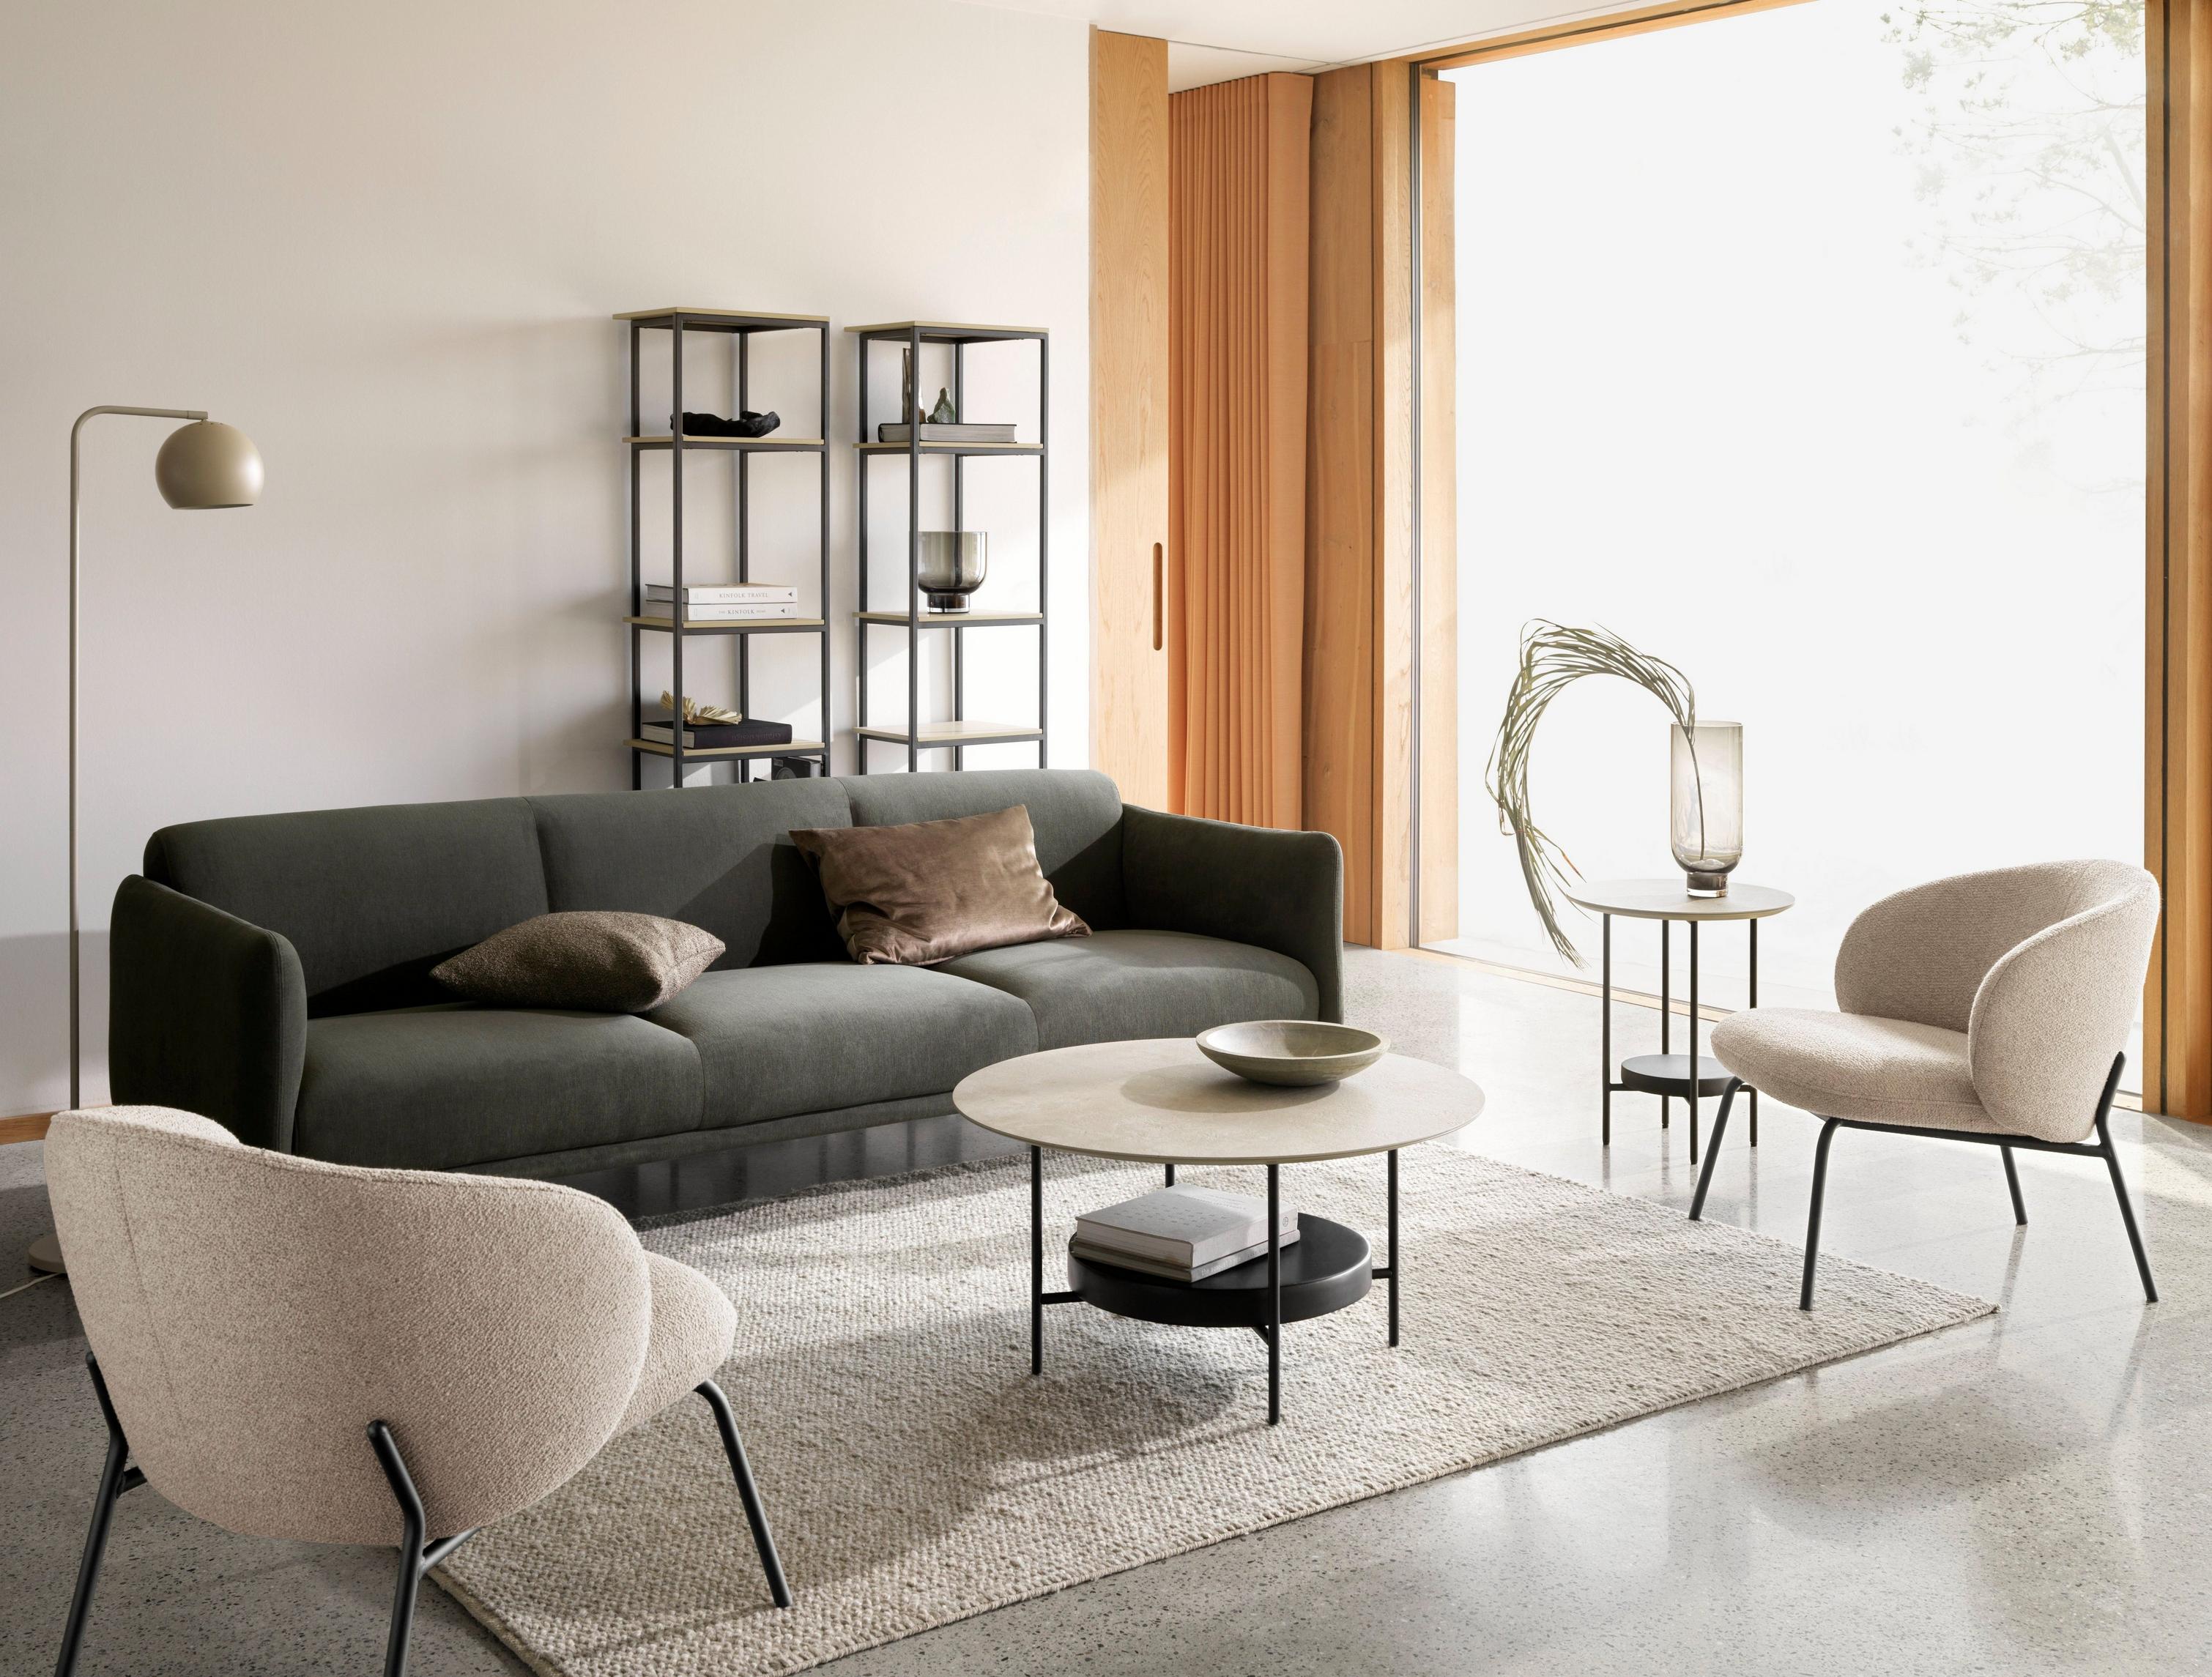 Berne 3-seter sofa i mørkegrønt Frisco tekstil med Madrid sofabord og Princeton stol i beige Lazio tekstil.